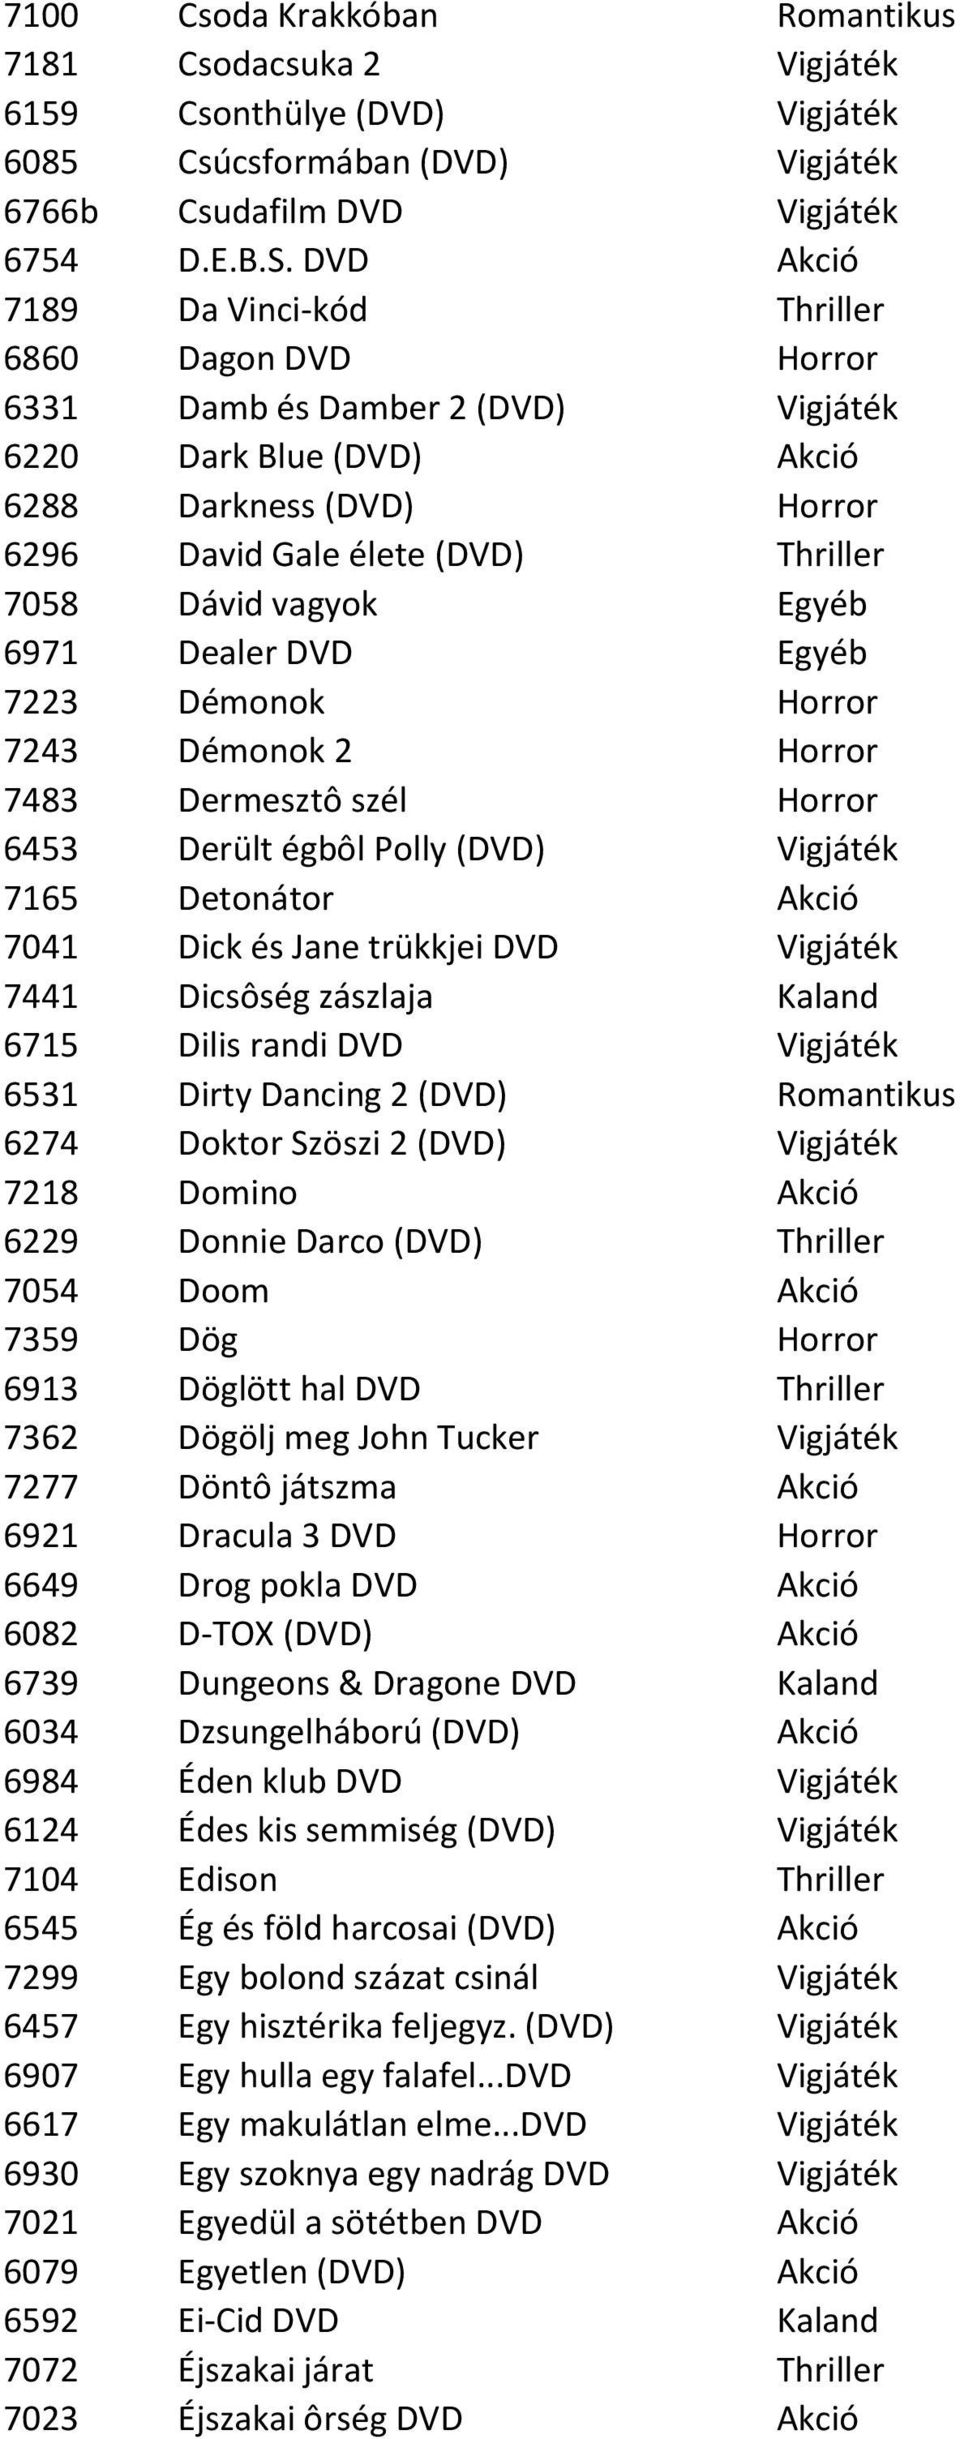 vagyok Egyéb 6971 Dealer DVD Egyéb 7223 Démonok Horror 7243 Démonok 2 Horror 7483 Dermesztô szél Horror 6453 Derült égbôl Polly (DVD) Vigjáték 7165 Detonátor Akció 7041 Dick és Jane trükkjei DVD